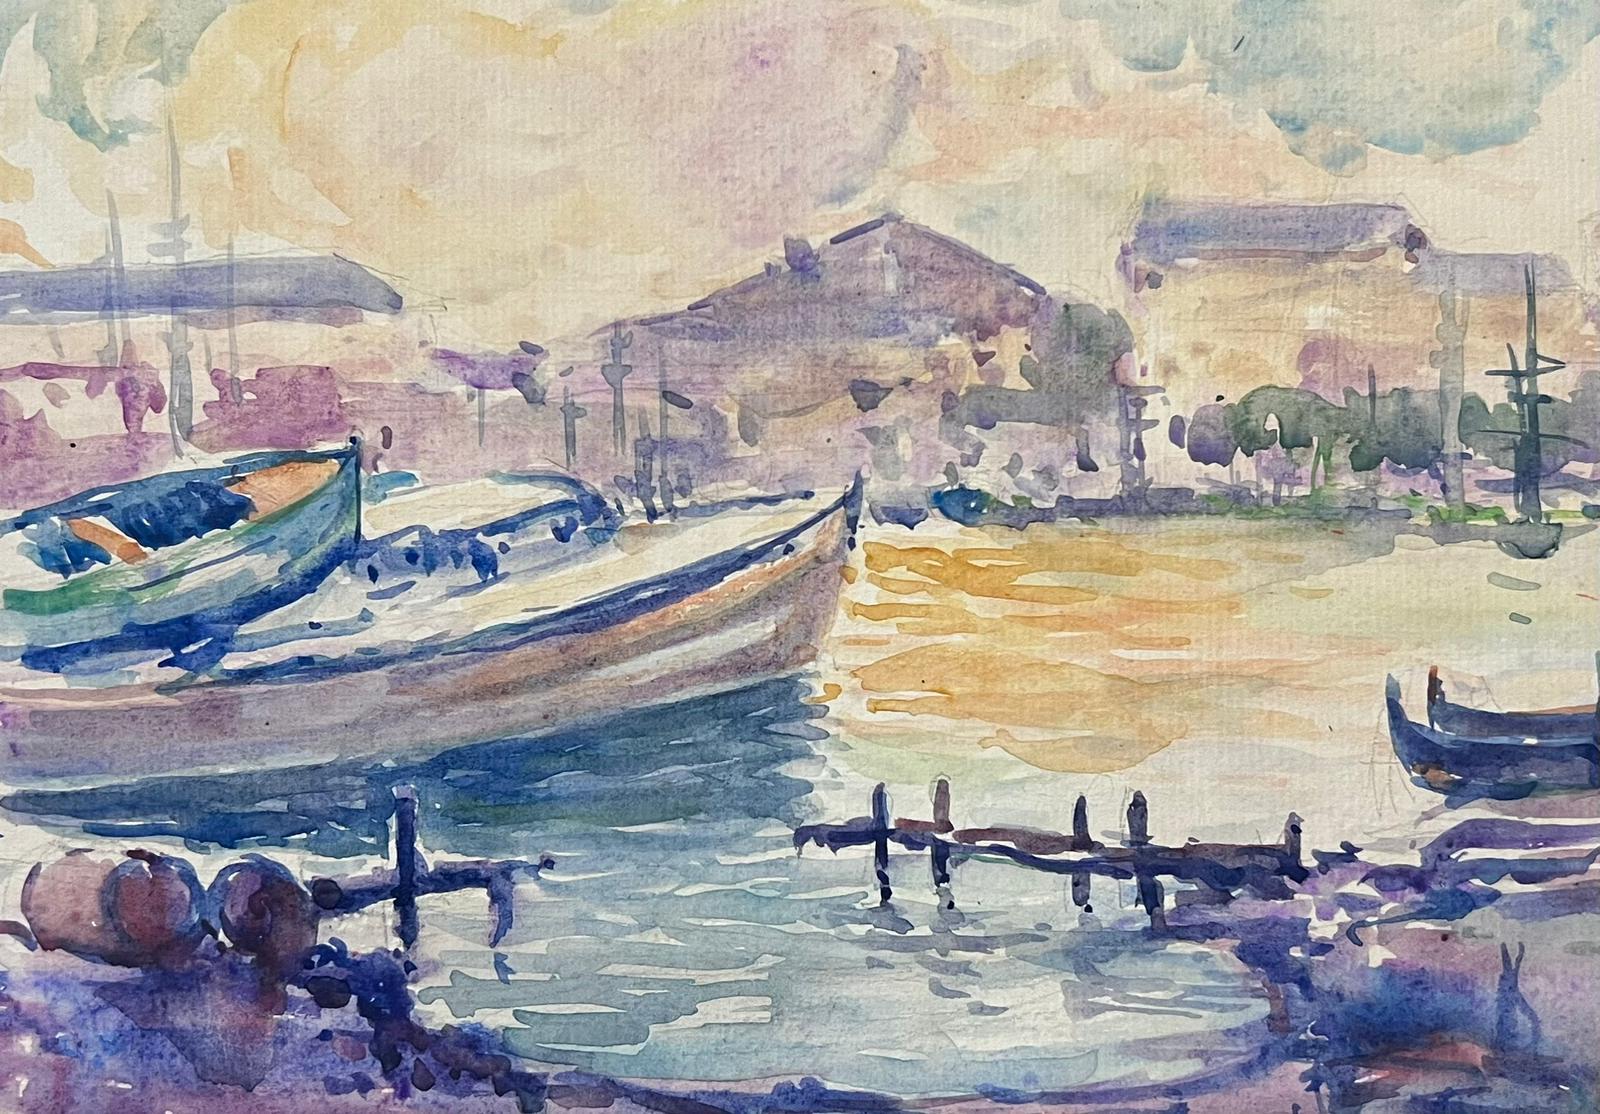 Landscape Art Jean Laforgue - Peinture post-impressionniste française du milieu du 20e siècle - Voilier de bateaux couleur pastel